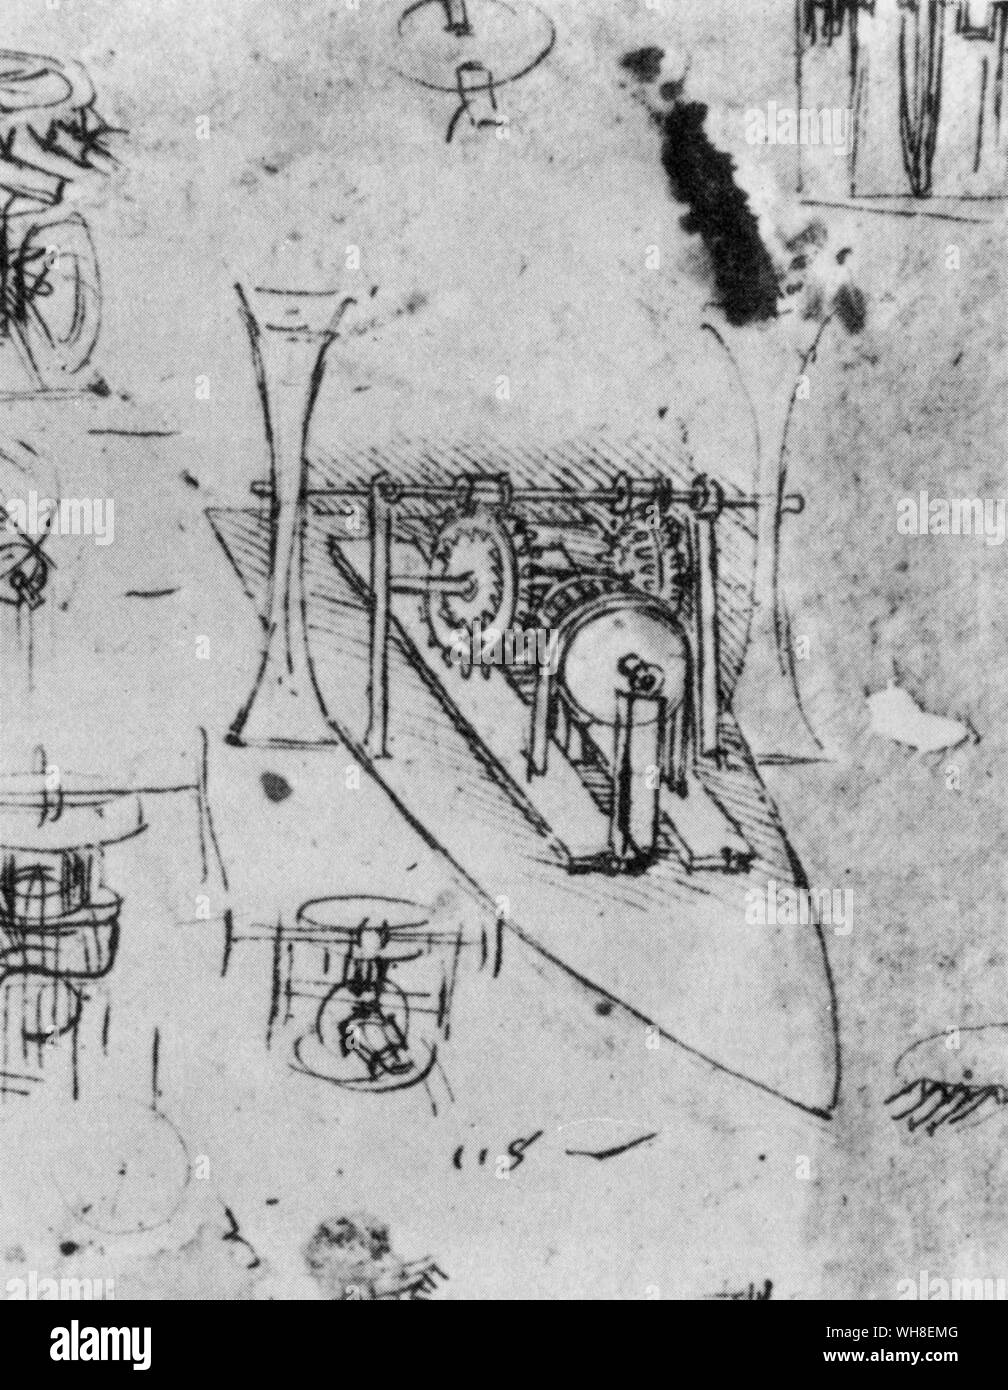 Leonardo's complete système d'engrenages qui font tourner les palettes au moyen de pédales. Leonardo da Vinci (1452-1519) était un architecte italien de la Renaissance, musicien, anatomiste, inventeur, ingénieur, géomètre, sculpteur et artiste. . . Banque D'Images